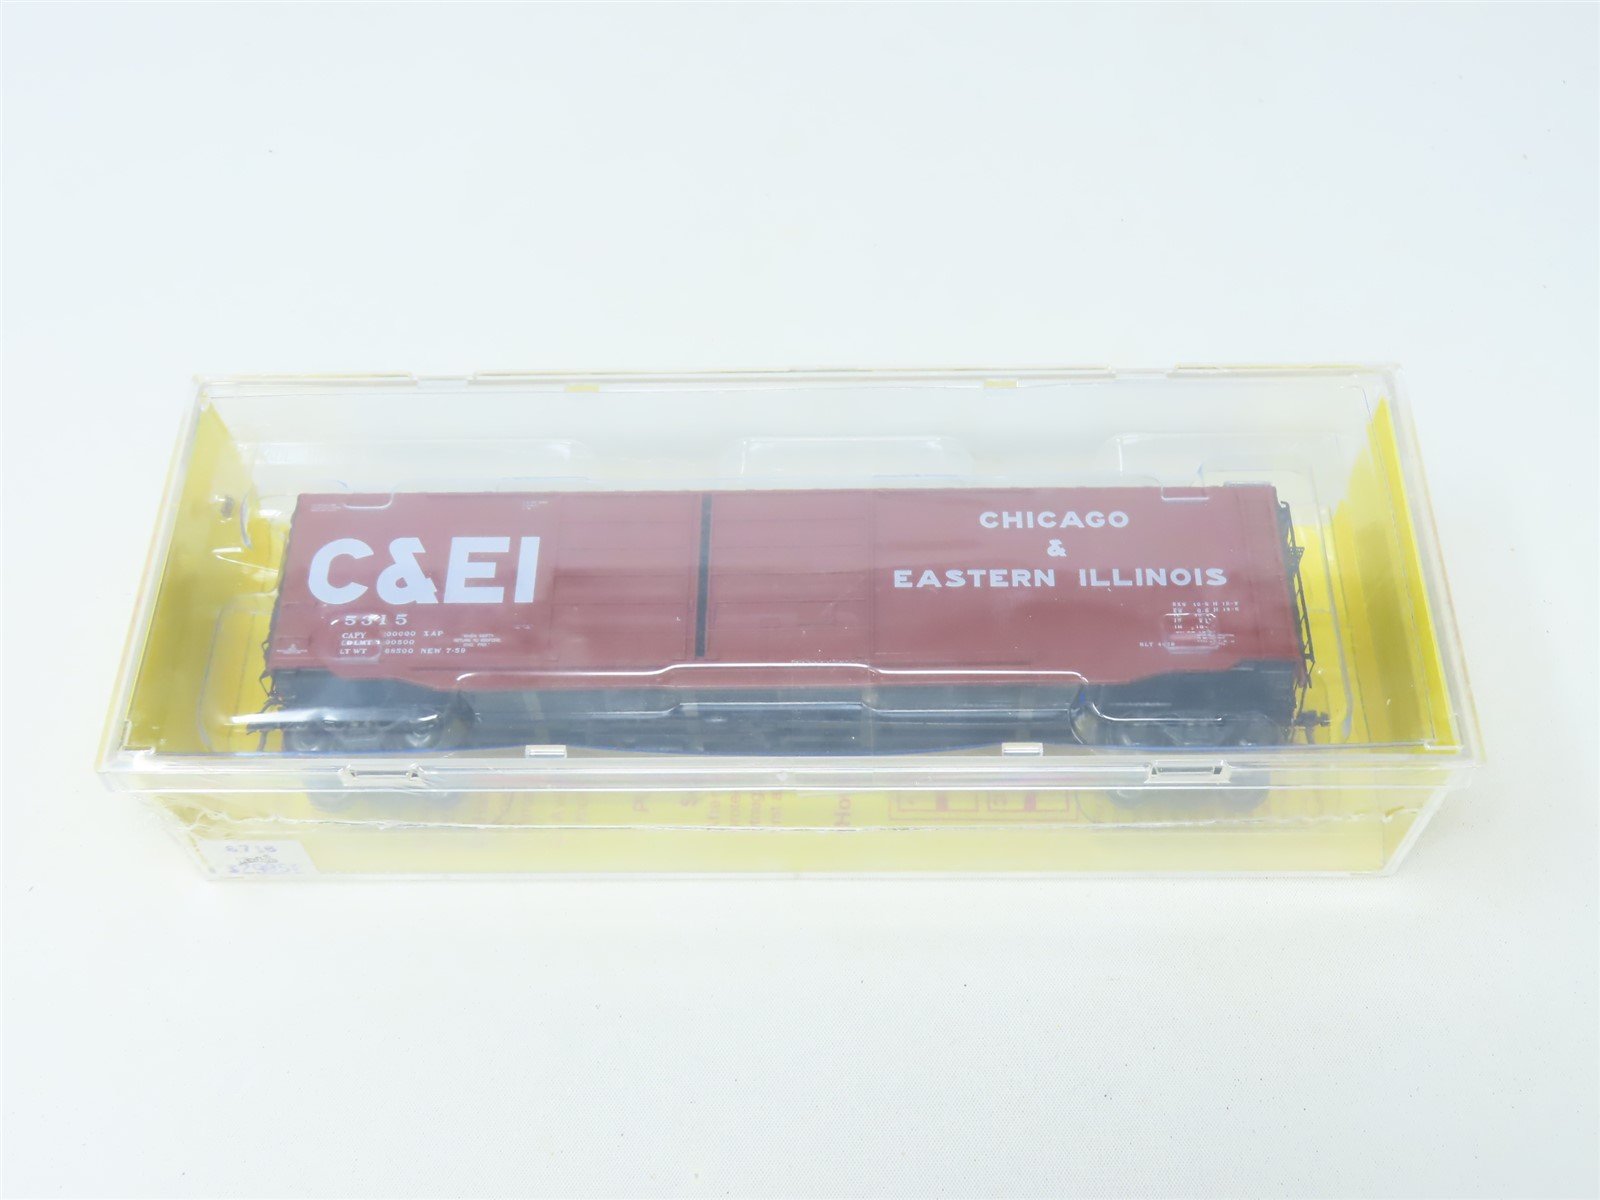 HO Scale Kadee #6716 C&EI Chicago & Eastern Illinois 50' Box Car #5315 - Sealed